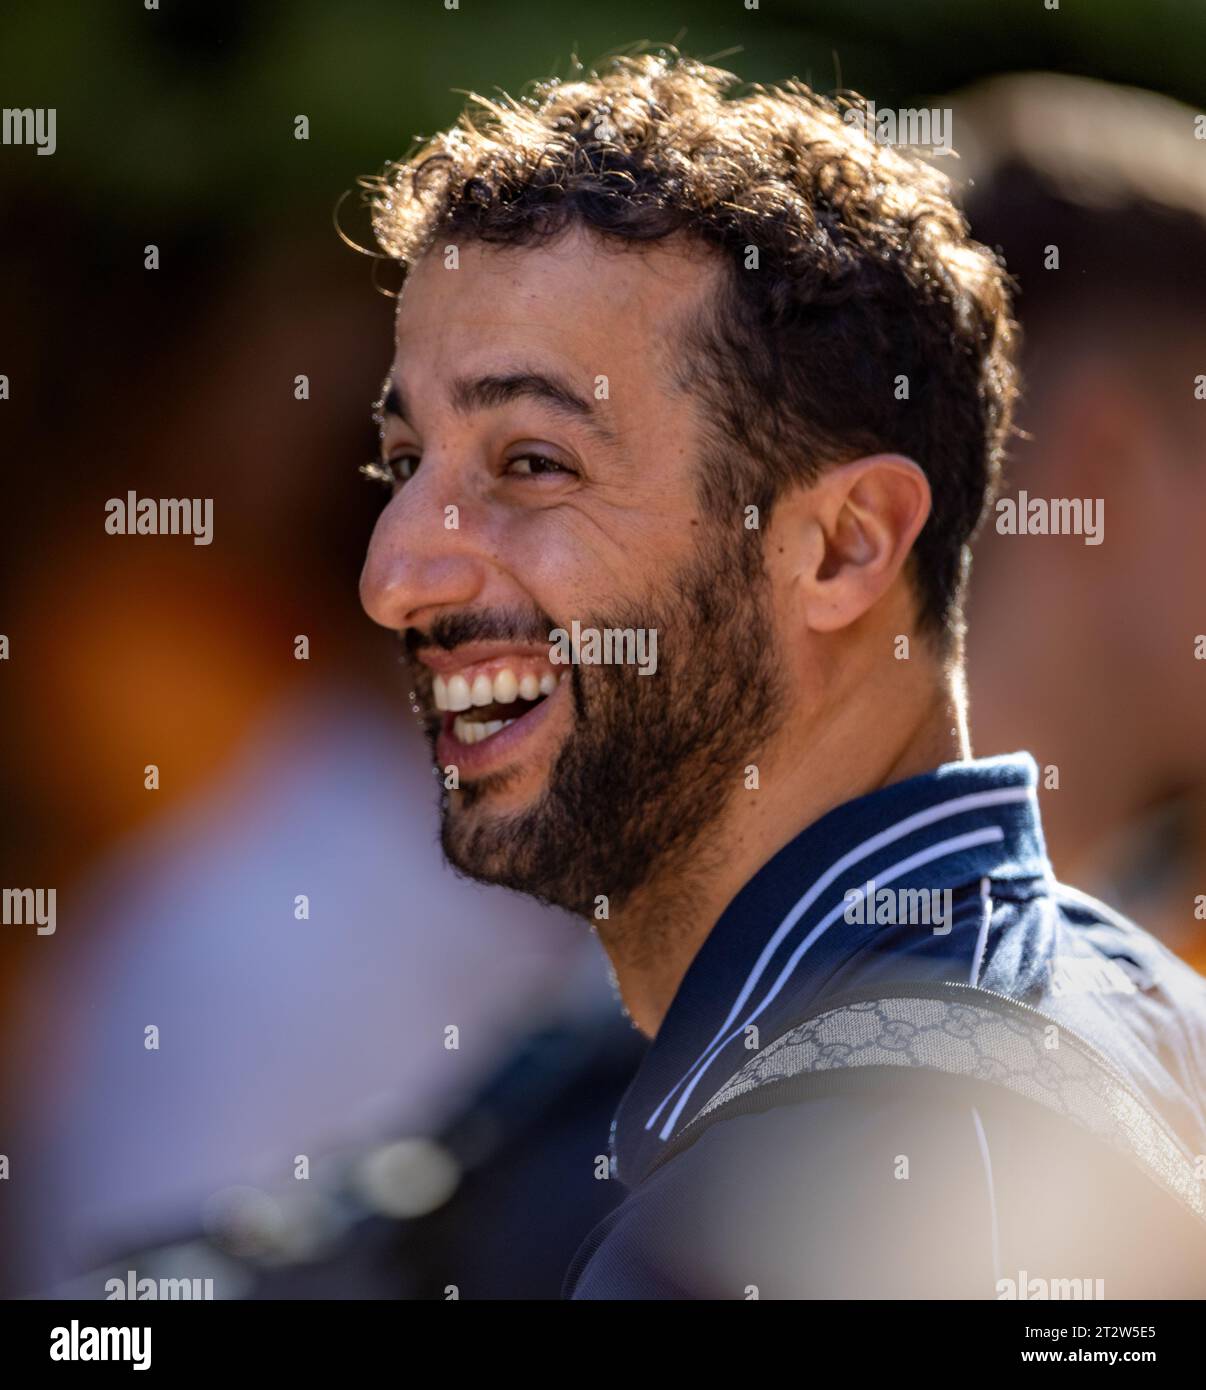 Austin, Texas - 21 ottobre 2023: Daniel Ricciardo, pilota della 3 scuderia Alphatauri F1, gareggia nel Gran Premio degli Stati Uniti di Lenovo sul circuito delle Americhe. Crediti: Nick Paruch / Alamy Live News Foto Stock